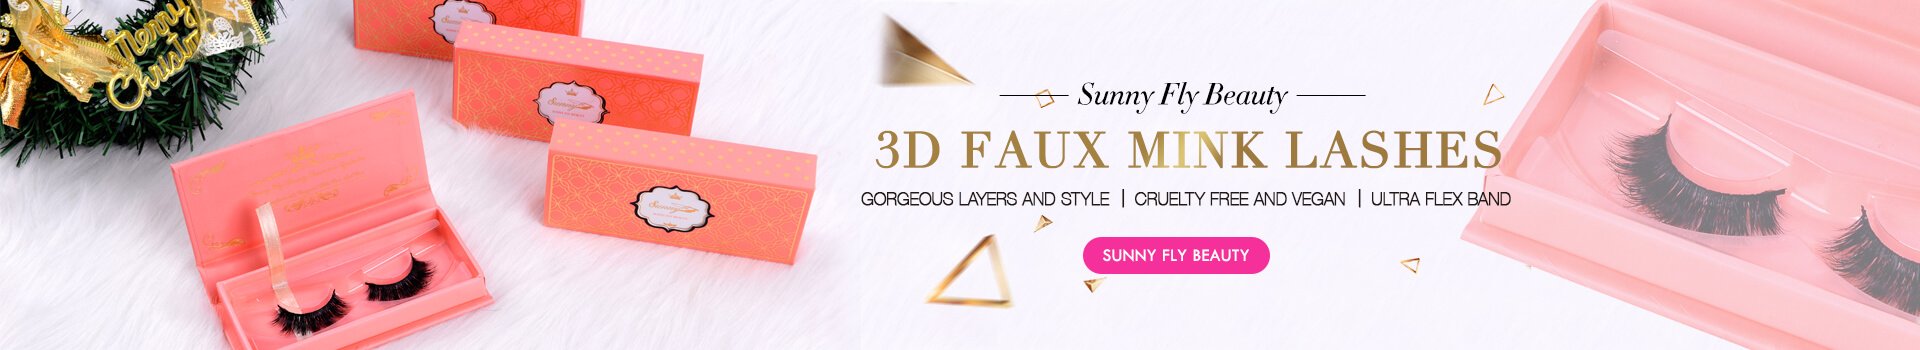 3D Faux Mink Lashes SD22